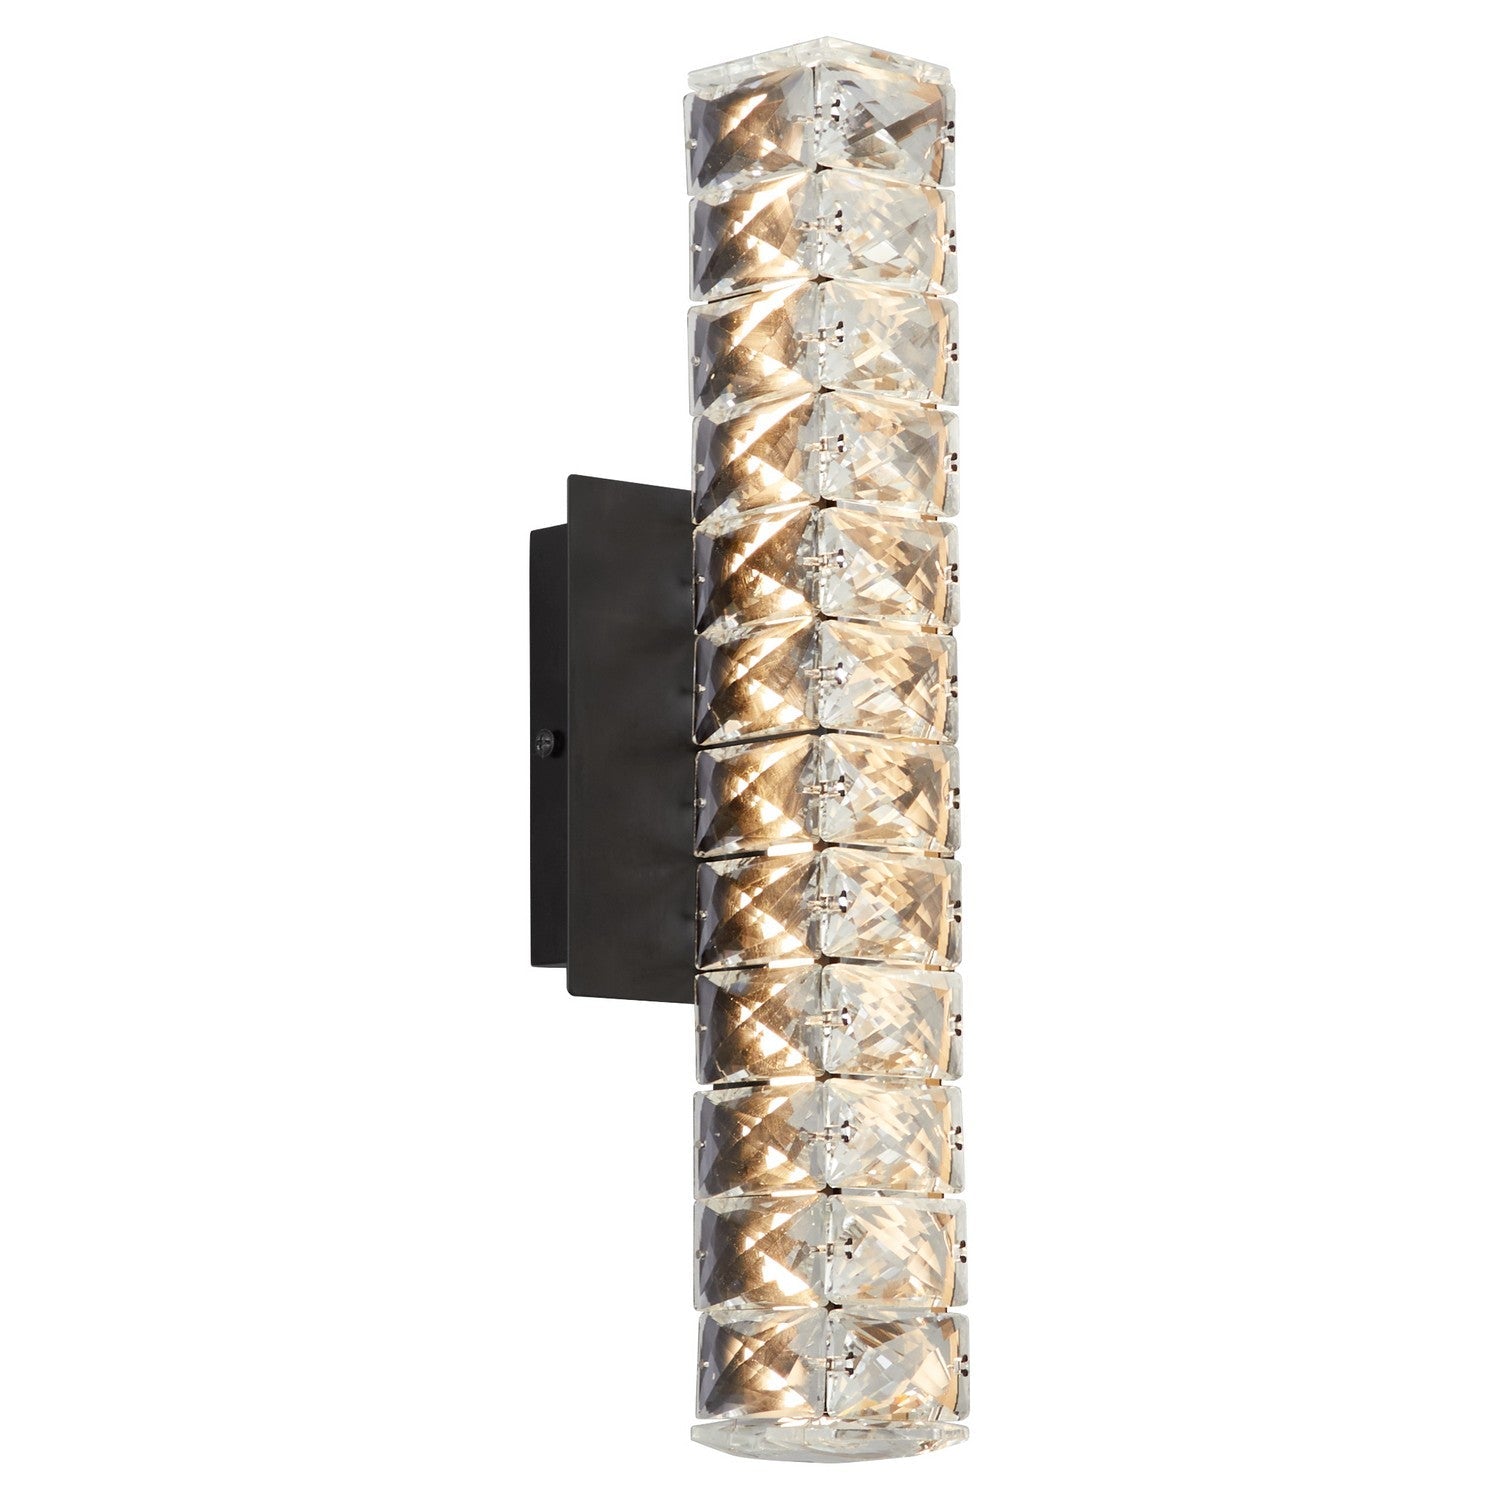 Oxygen Elan 3-572-15 Modern LED Wall Light Fixture - Black, Cut Glass Diffuser